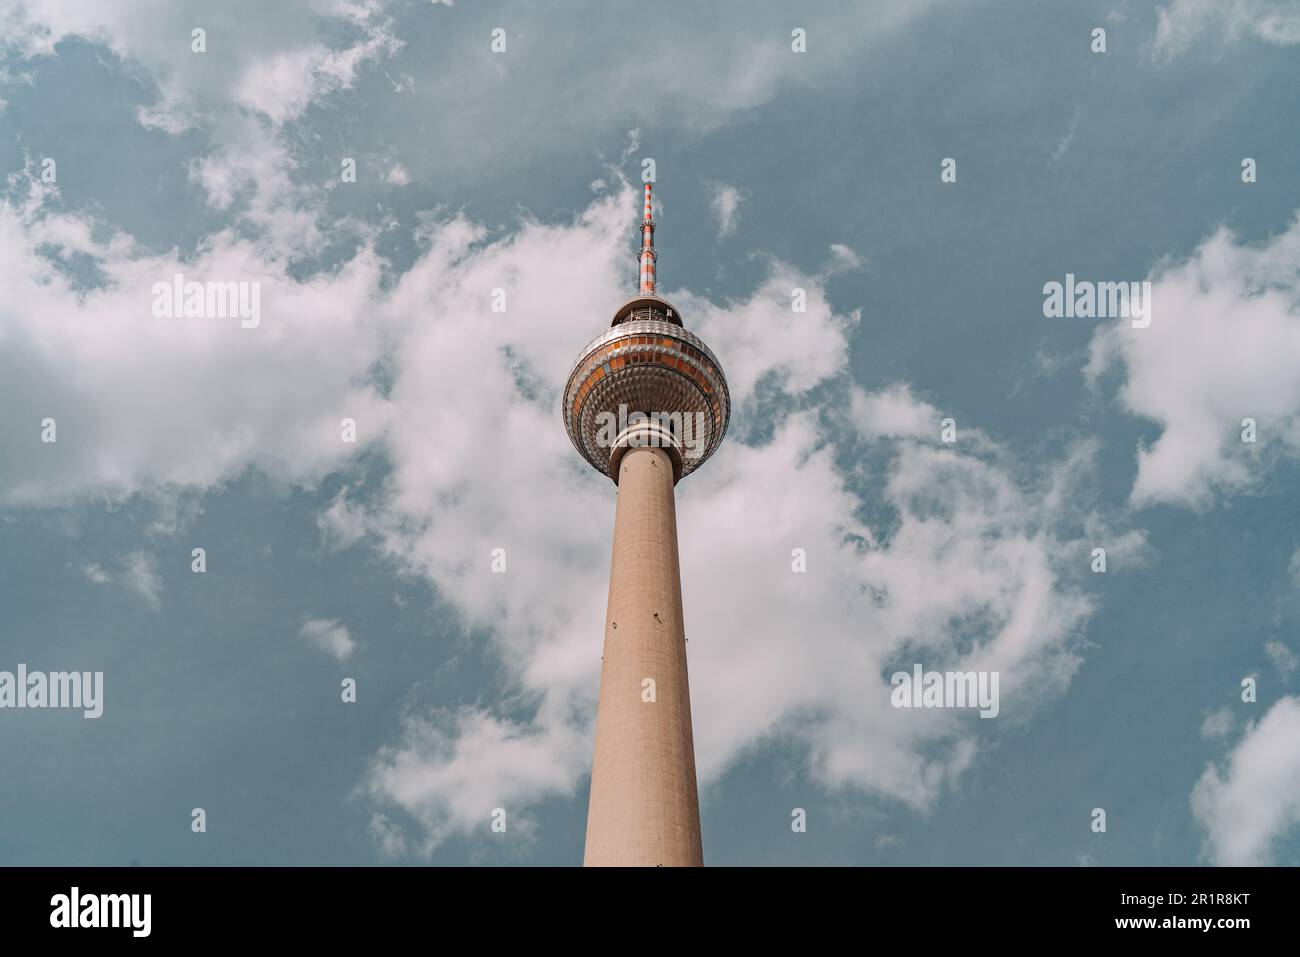 BERLINO, GERMANIA - 8 MAGGIO 2019: Vista mozzafiato di Fernsehturm, l'iconica torre televisiva che punteggiano lo skyline di Berlino, Germania. La struttura Foto Stock